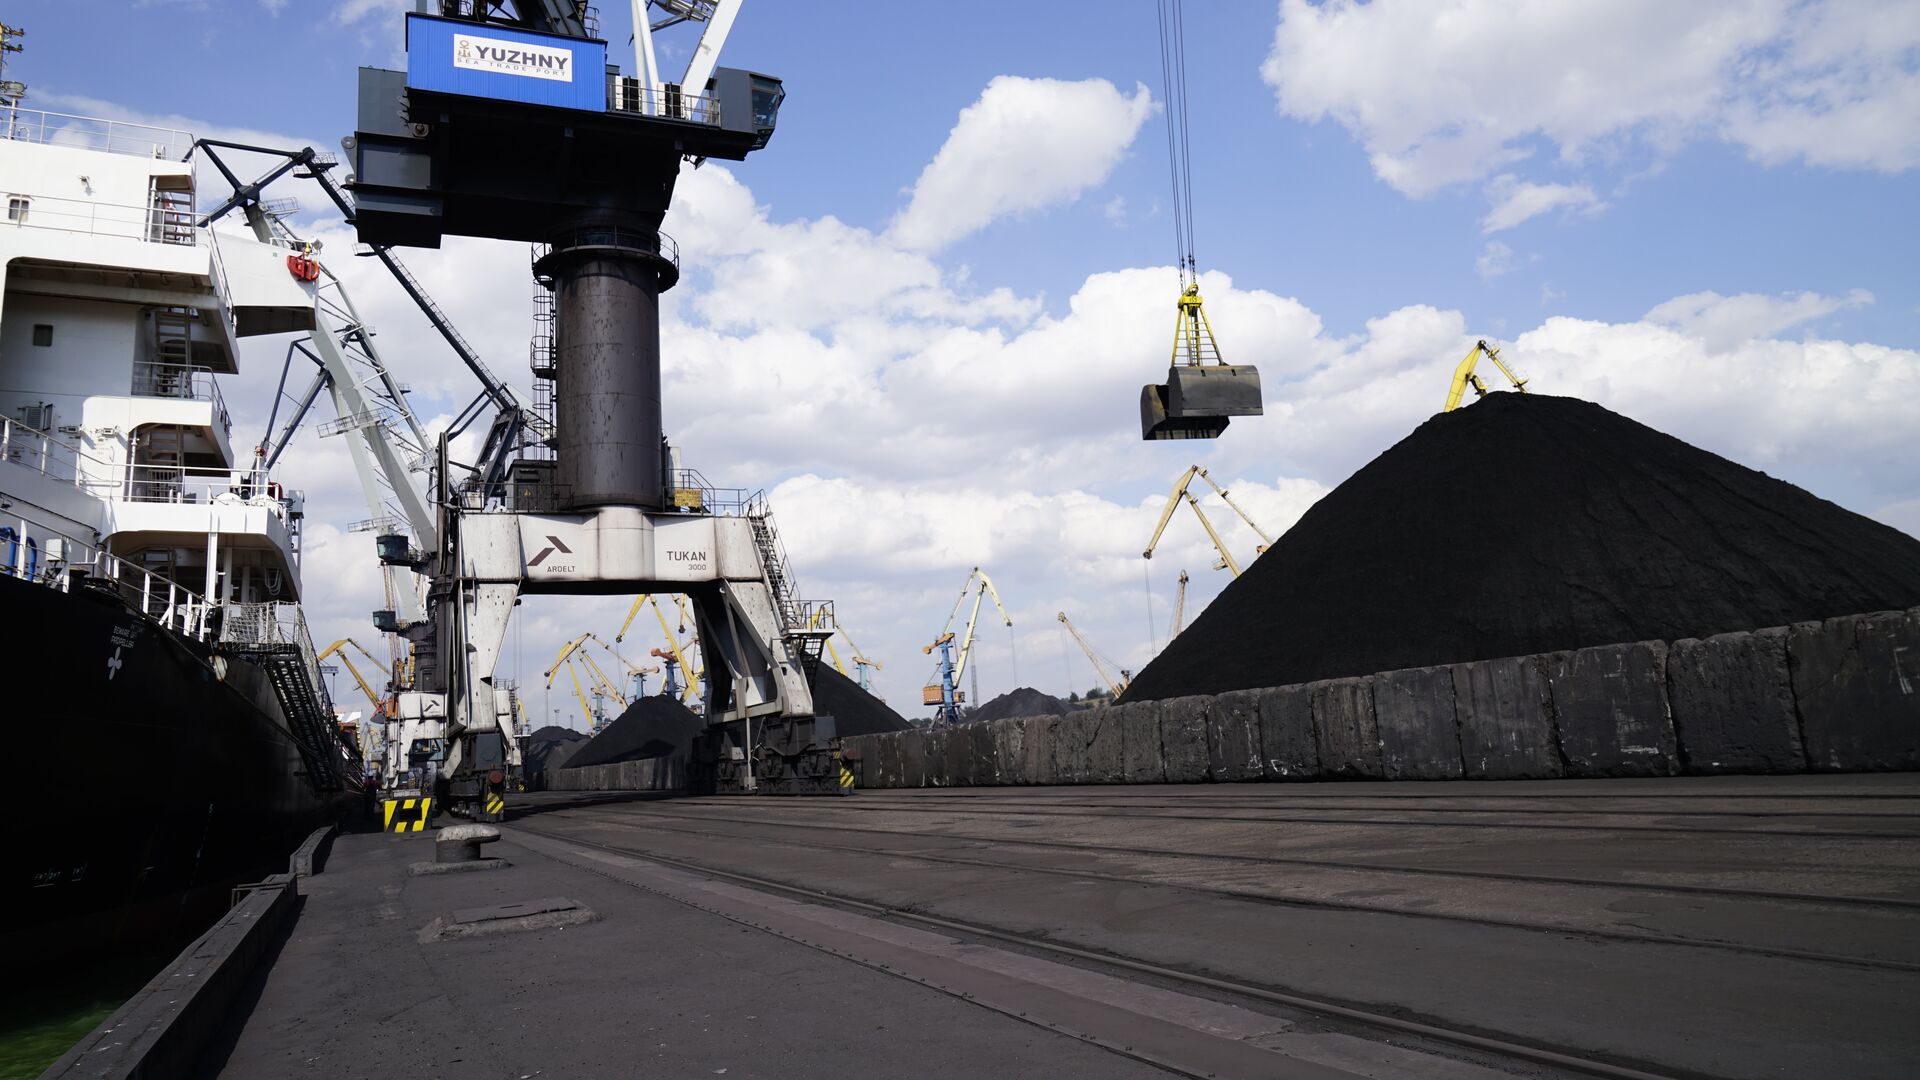 Https ria ru россия. Поставки угля. Разгрузка угля в порту. Угольная промышленность. Уголь Украина.